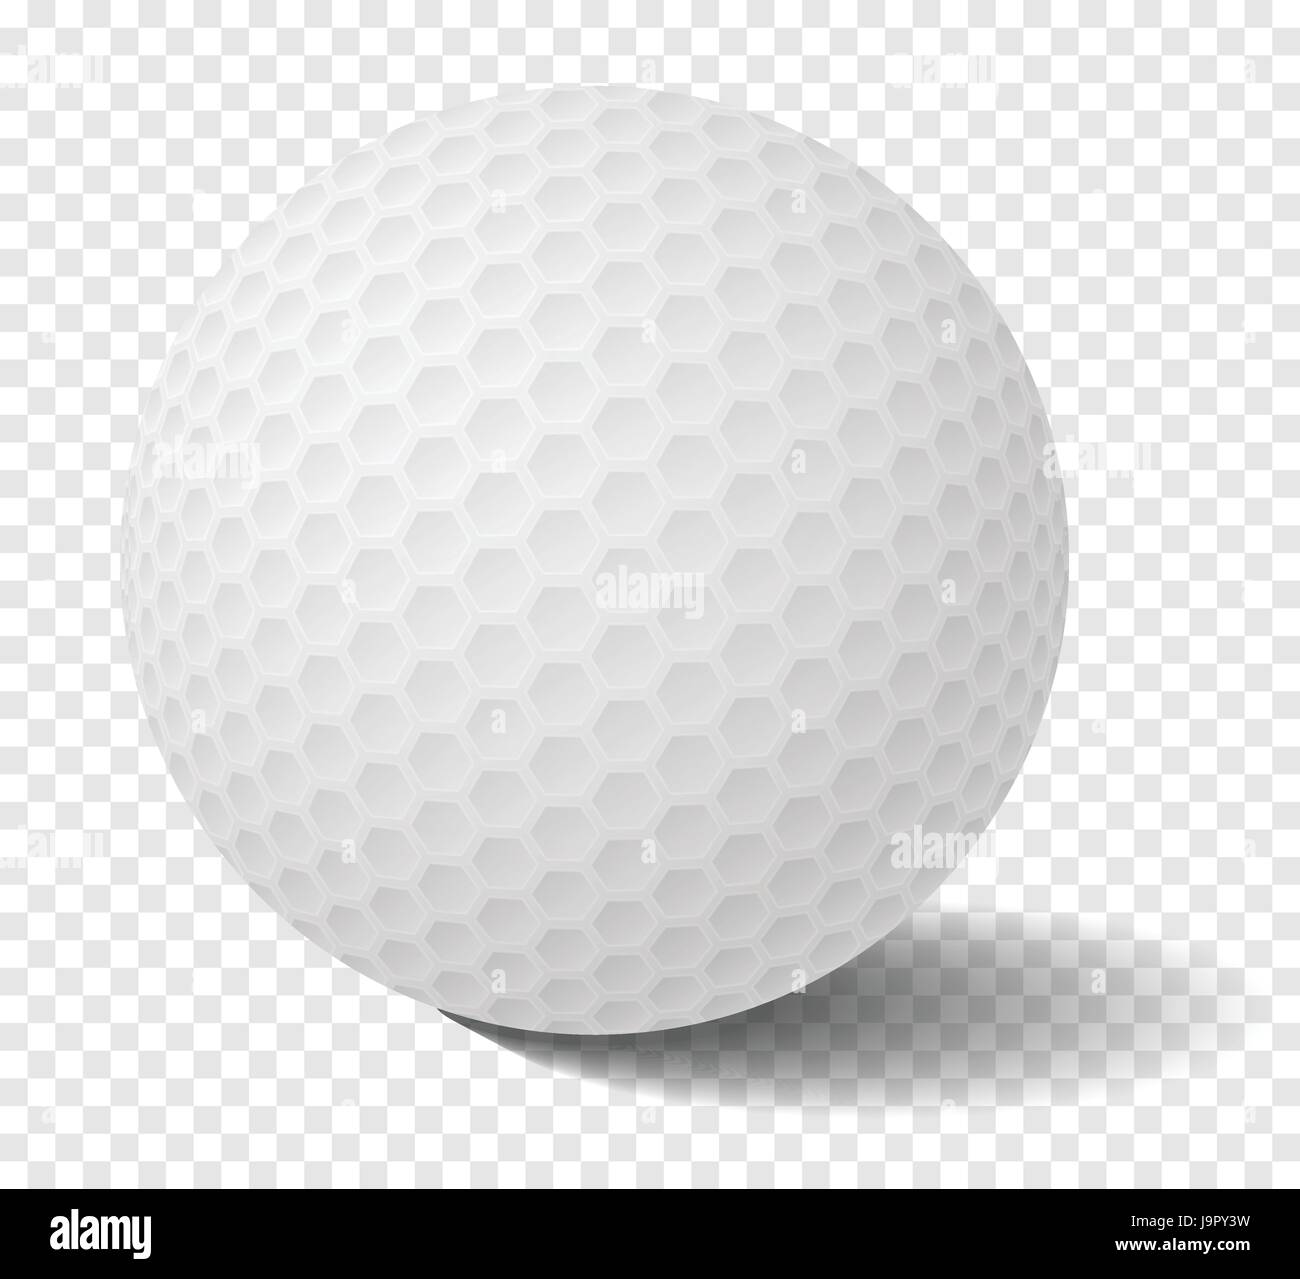 Pelota de golf aislados realista sobre la cuadrícula de transparencia - ilustración vectorial Ilustración del Vector